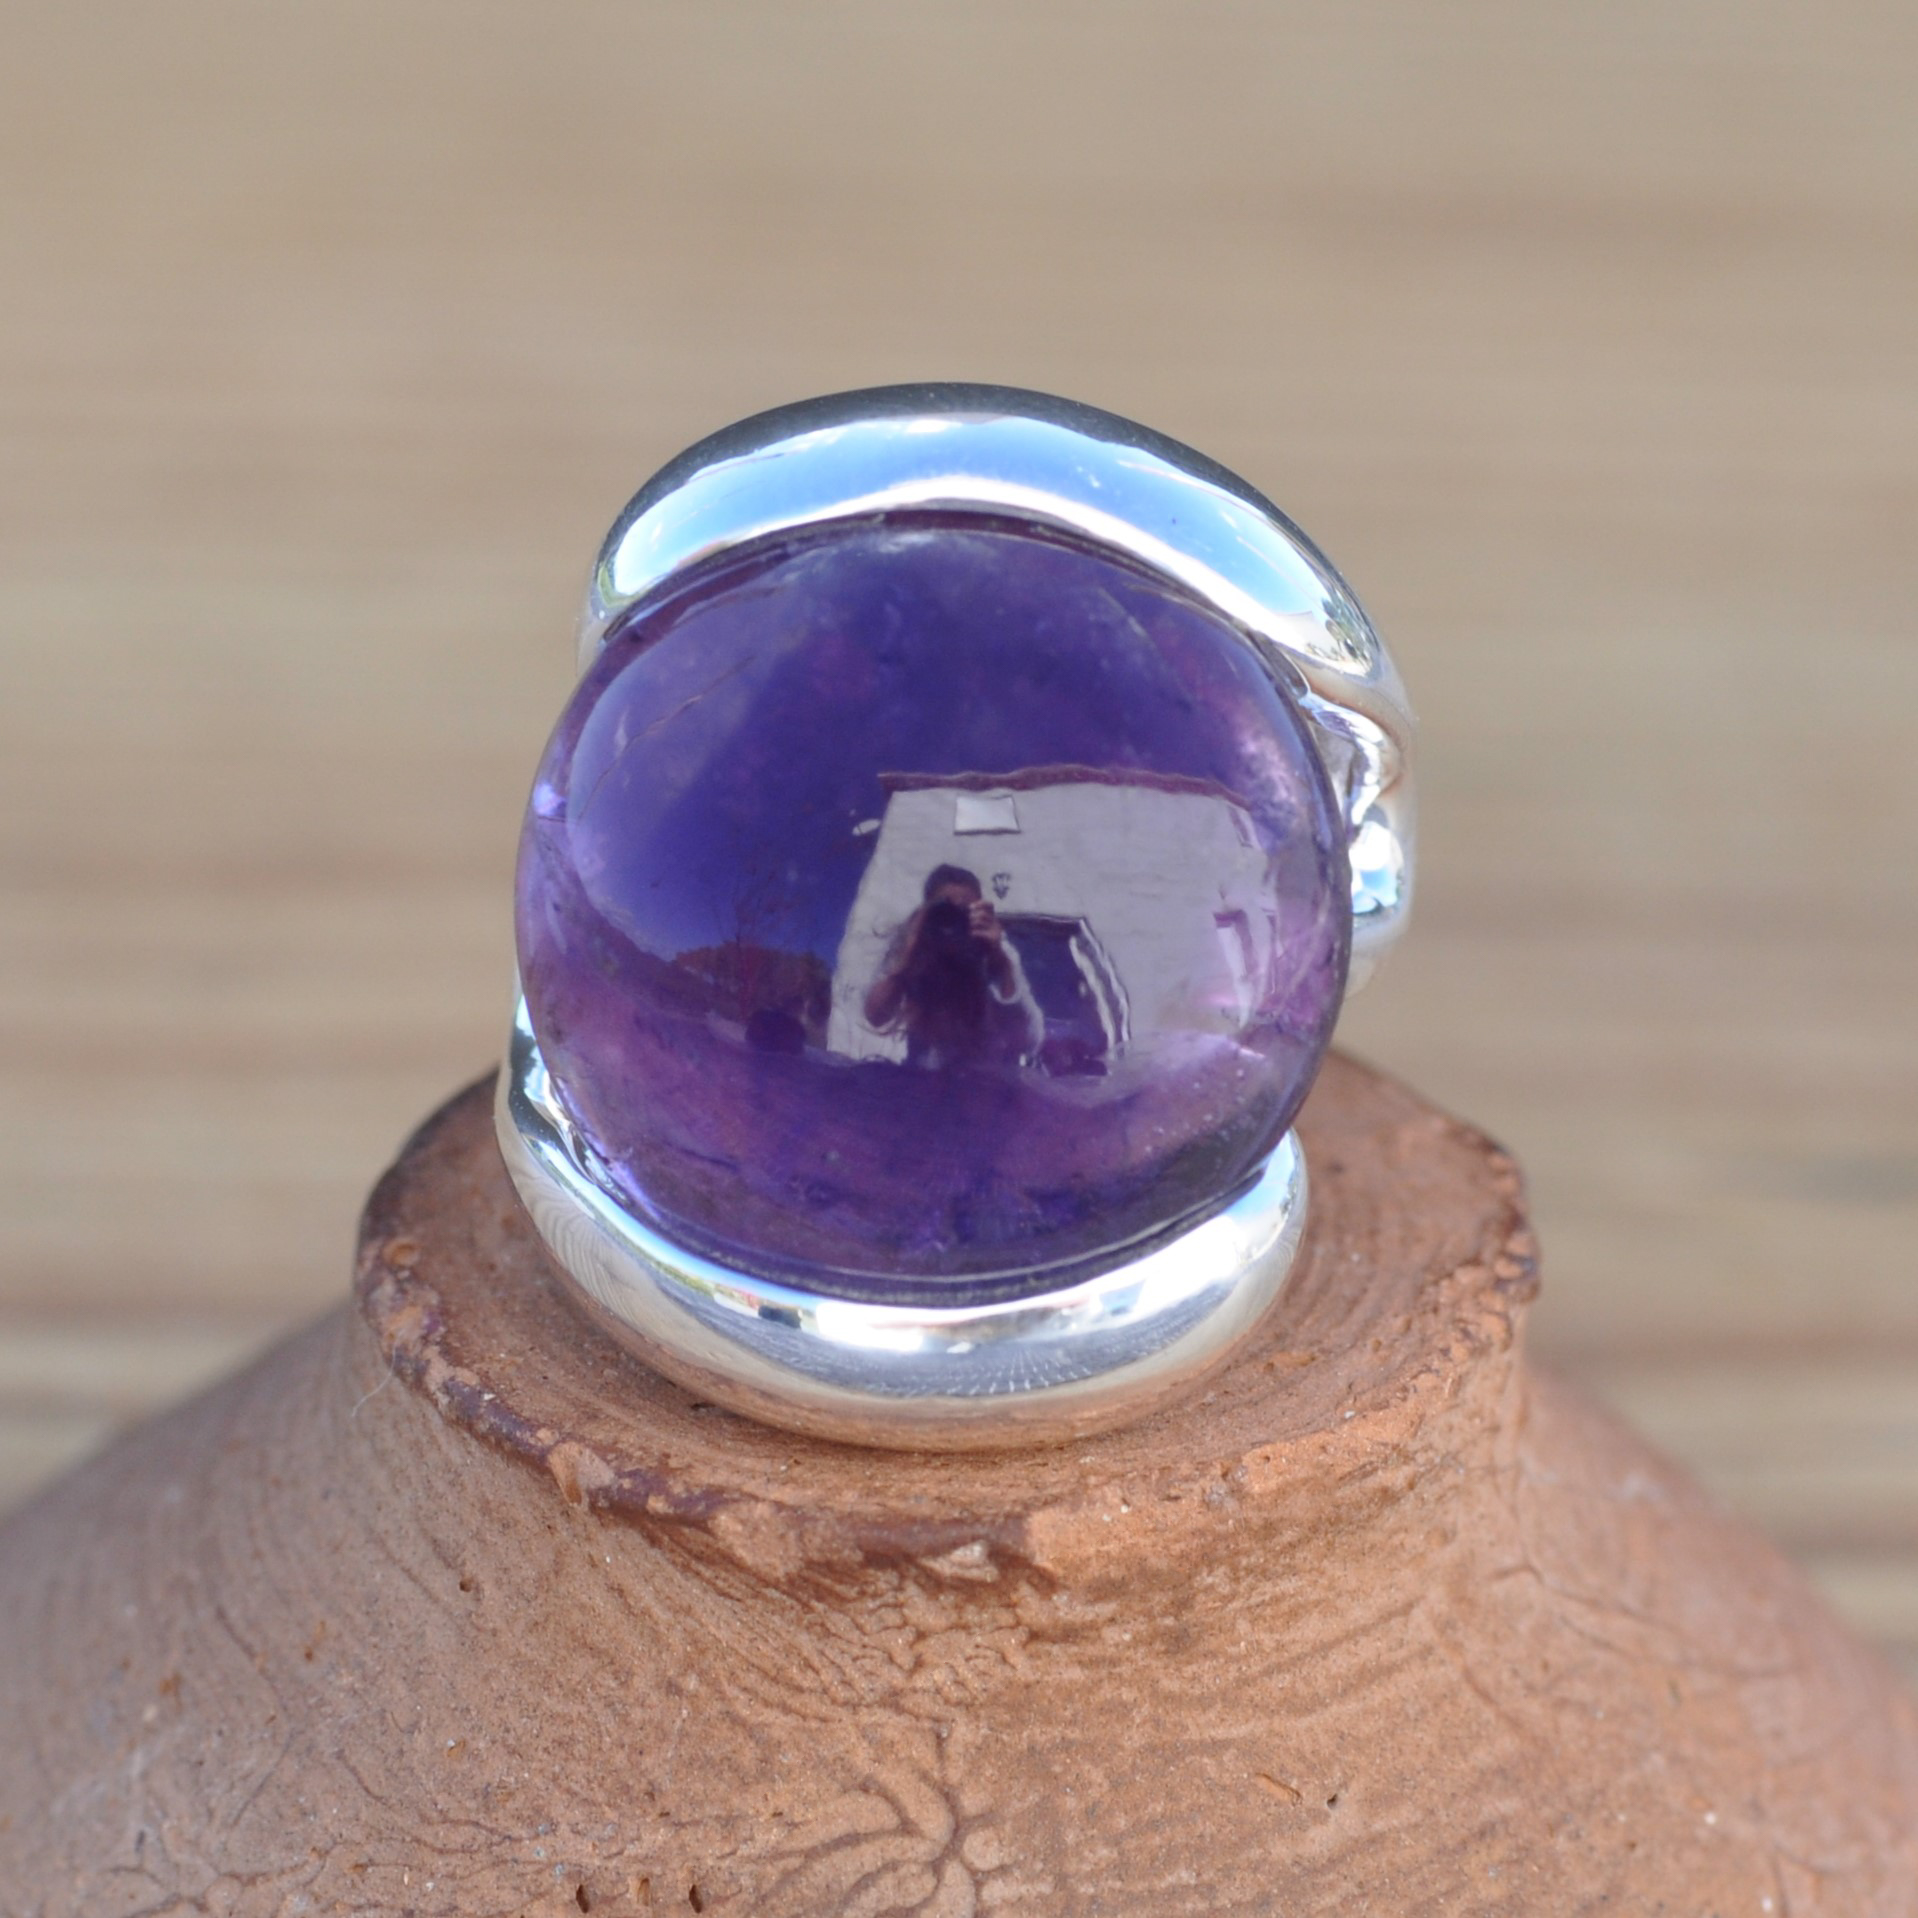 NEW ! Bague contemporaine argent et pierre ronde Améthyste (violet)